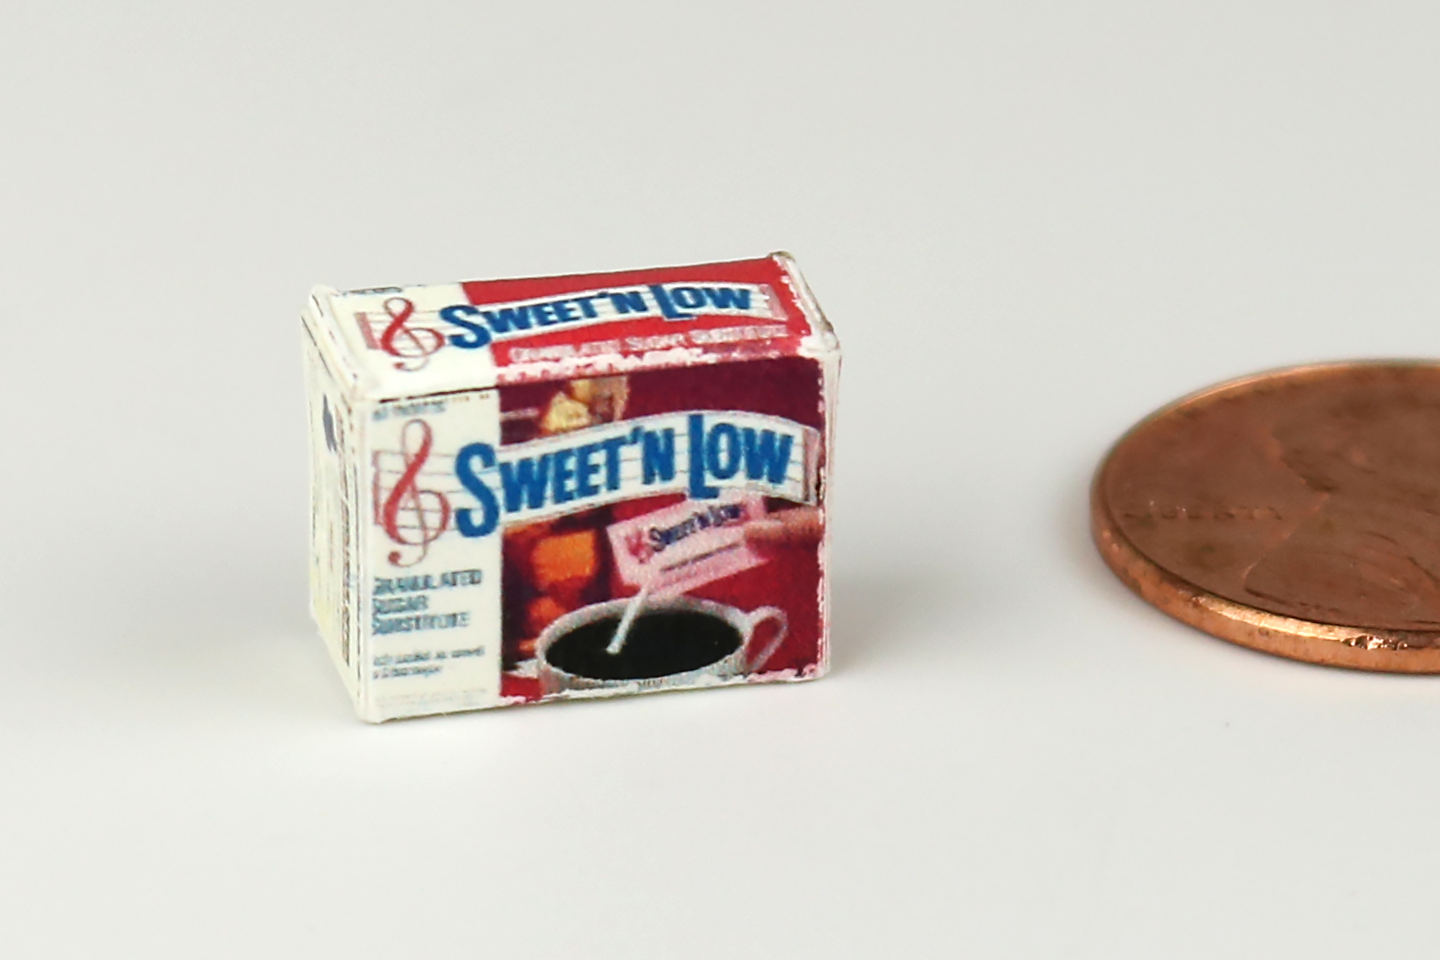 Box of Sweetener